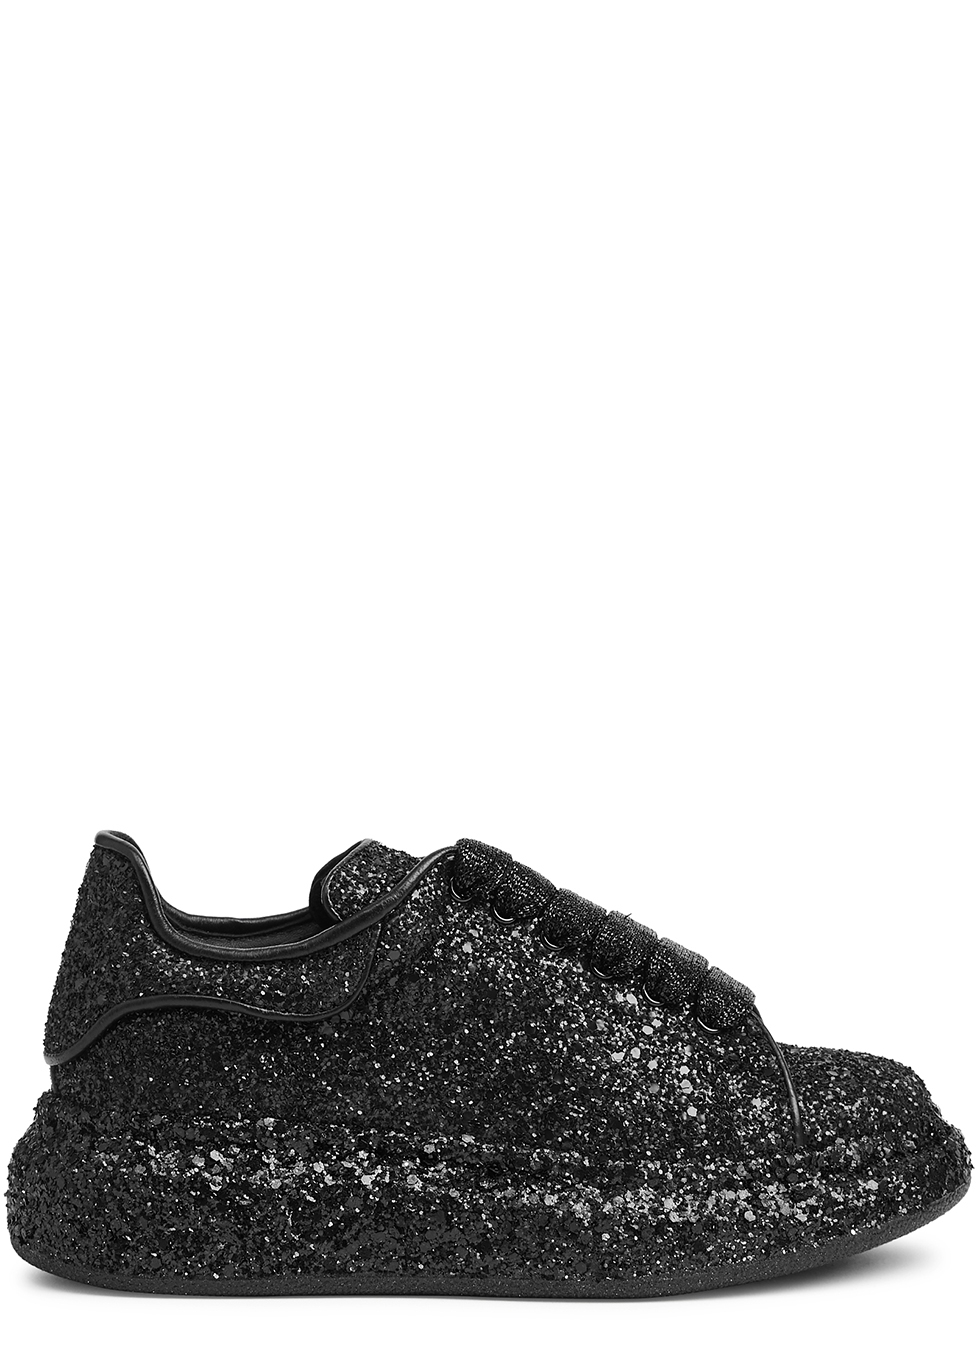 KIDS Oversized black glittered sneakers